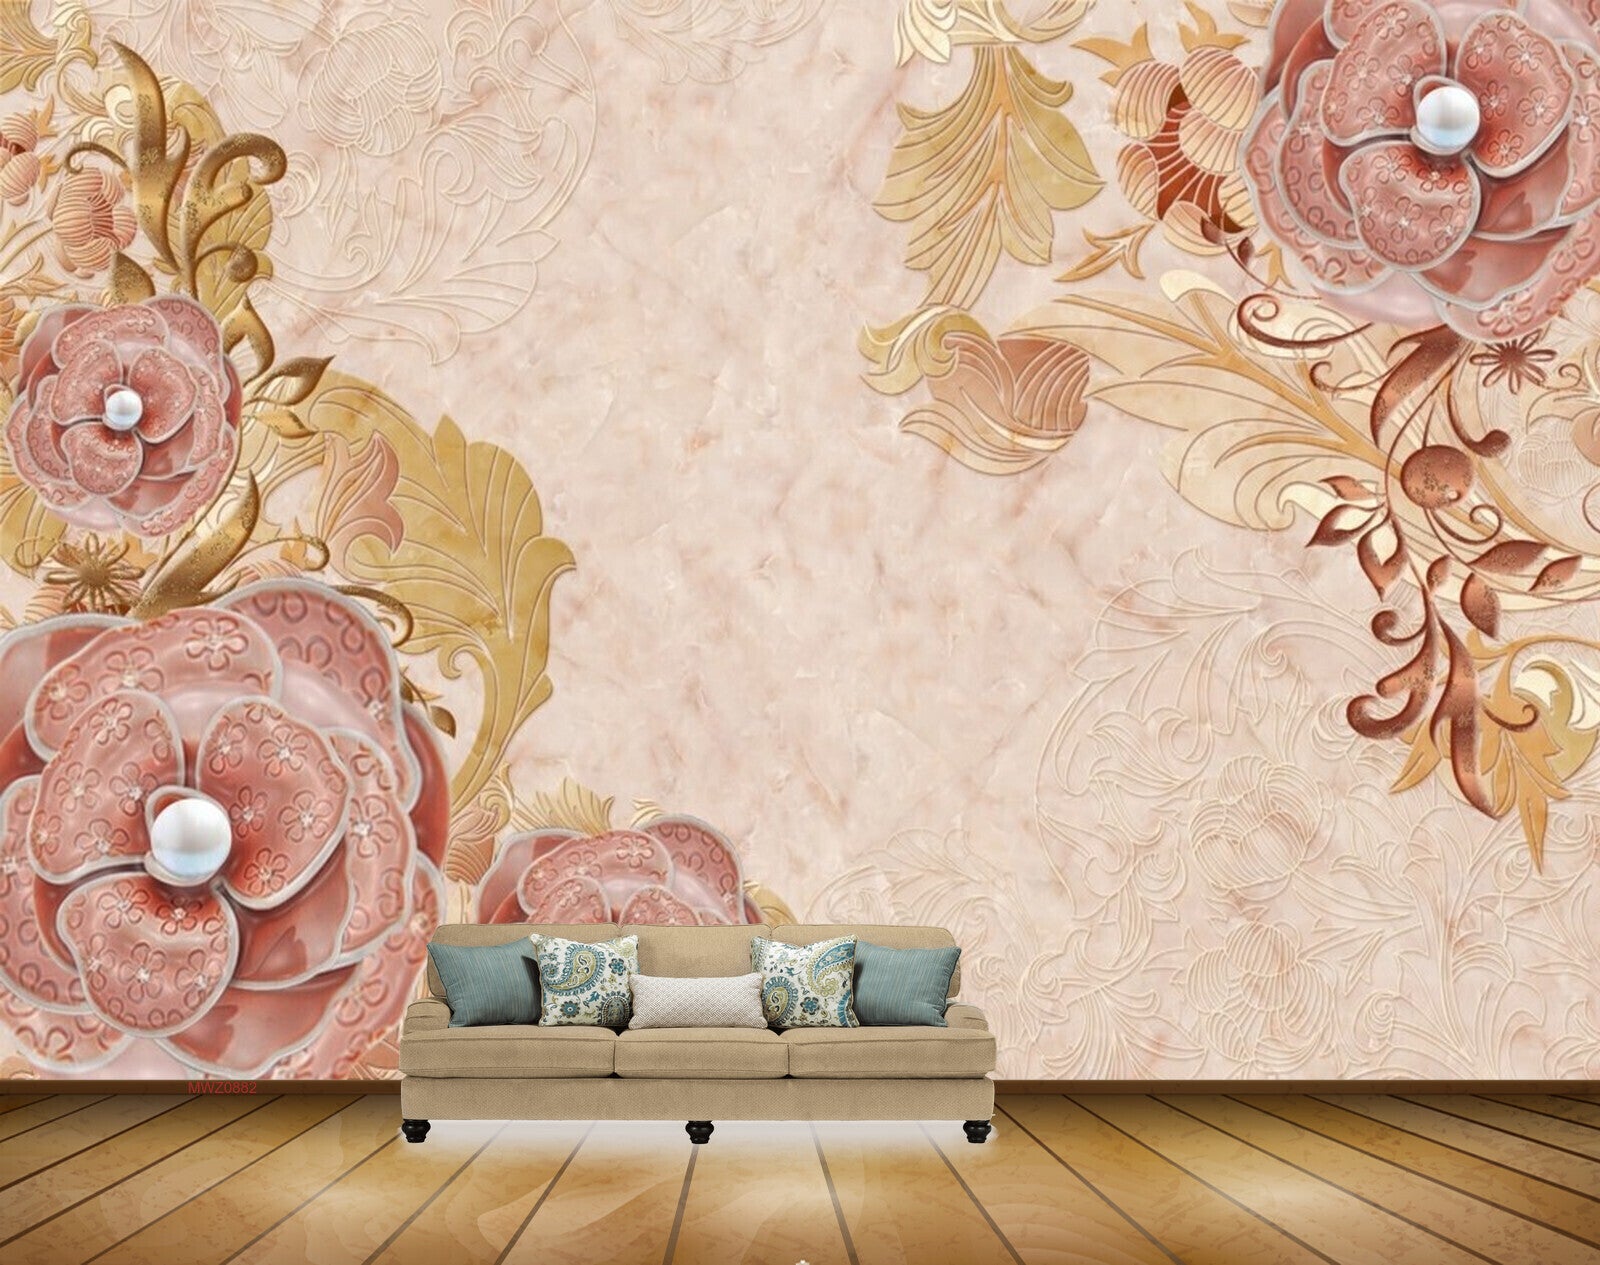 22 Rose Gold Flowers Wallpapers  WallpaperSafari